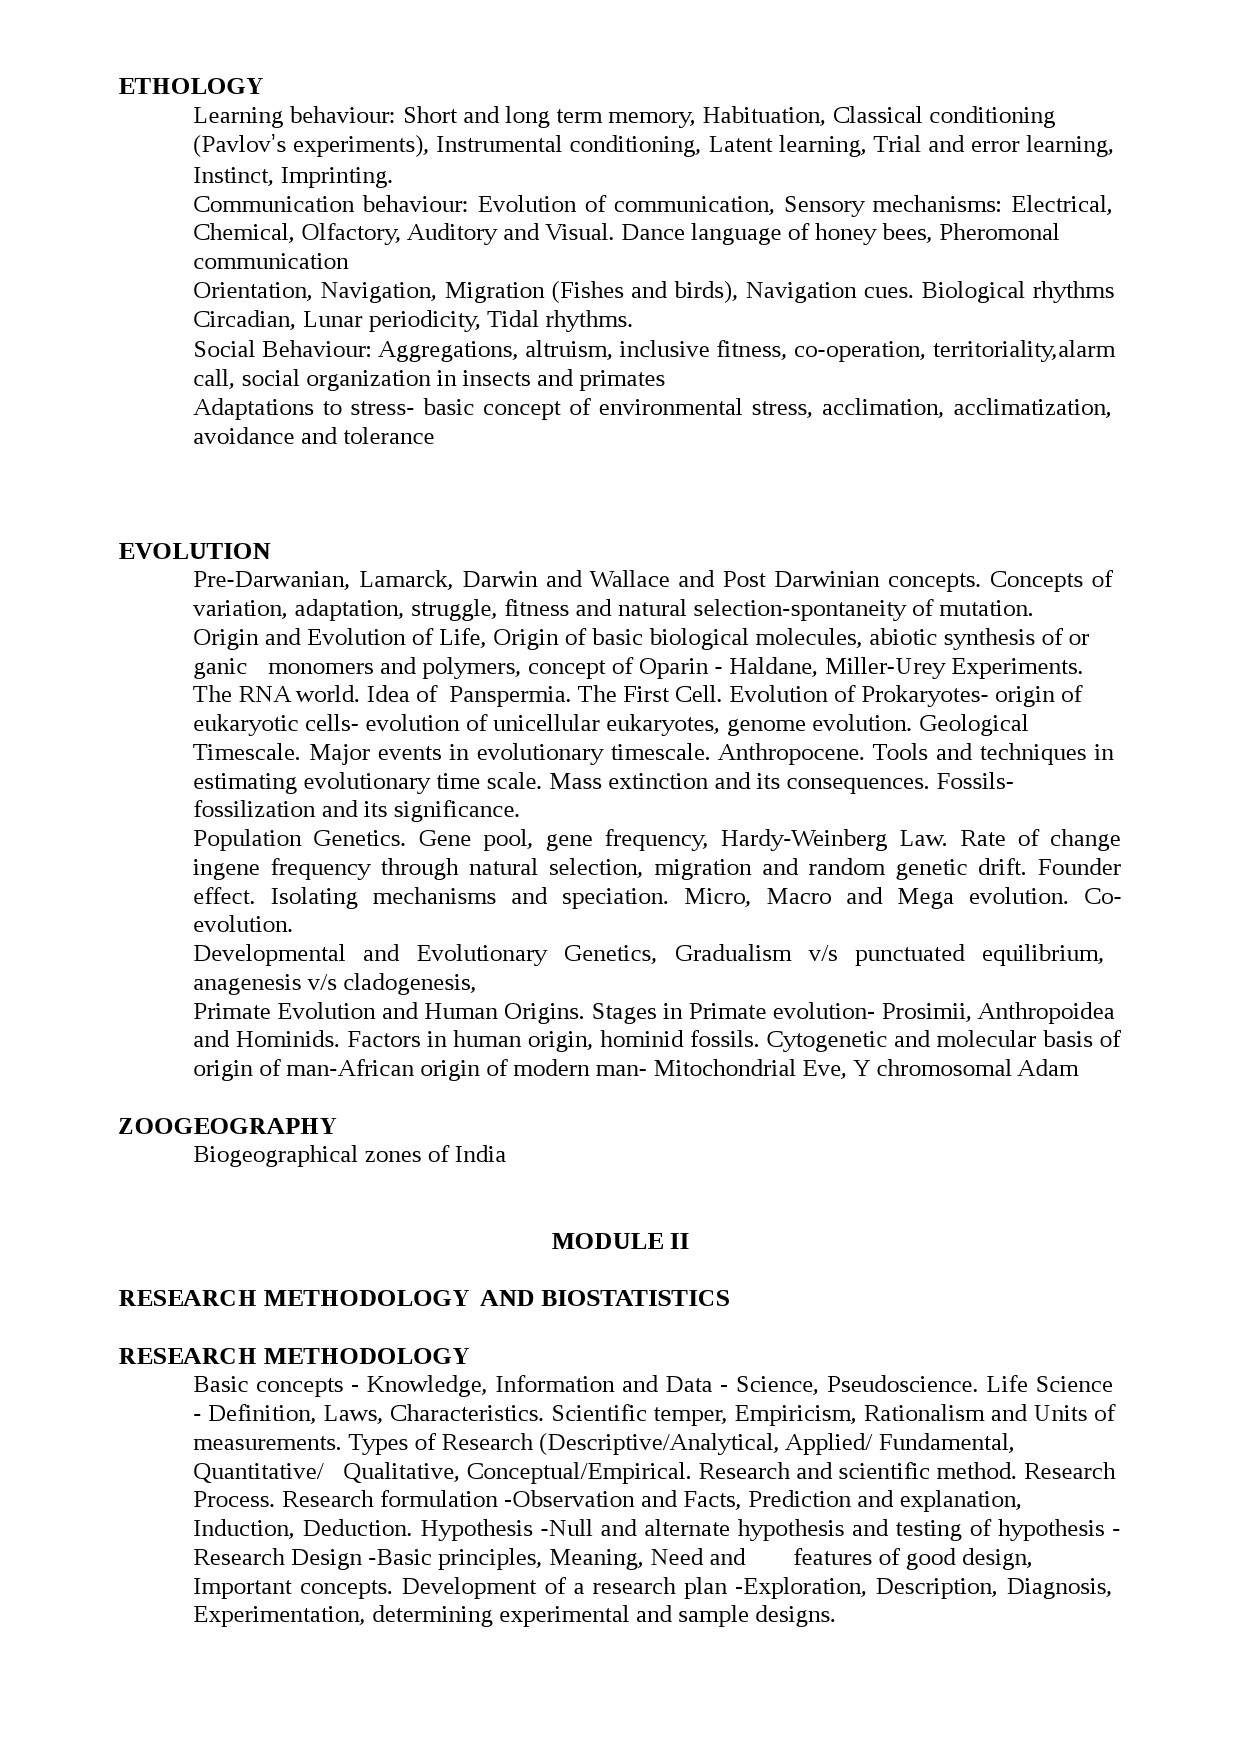 KPSC Syllabus 2021 Scientific Officer Biology - Notification Image 2